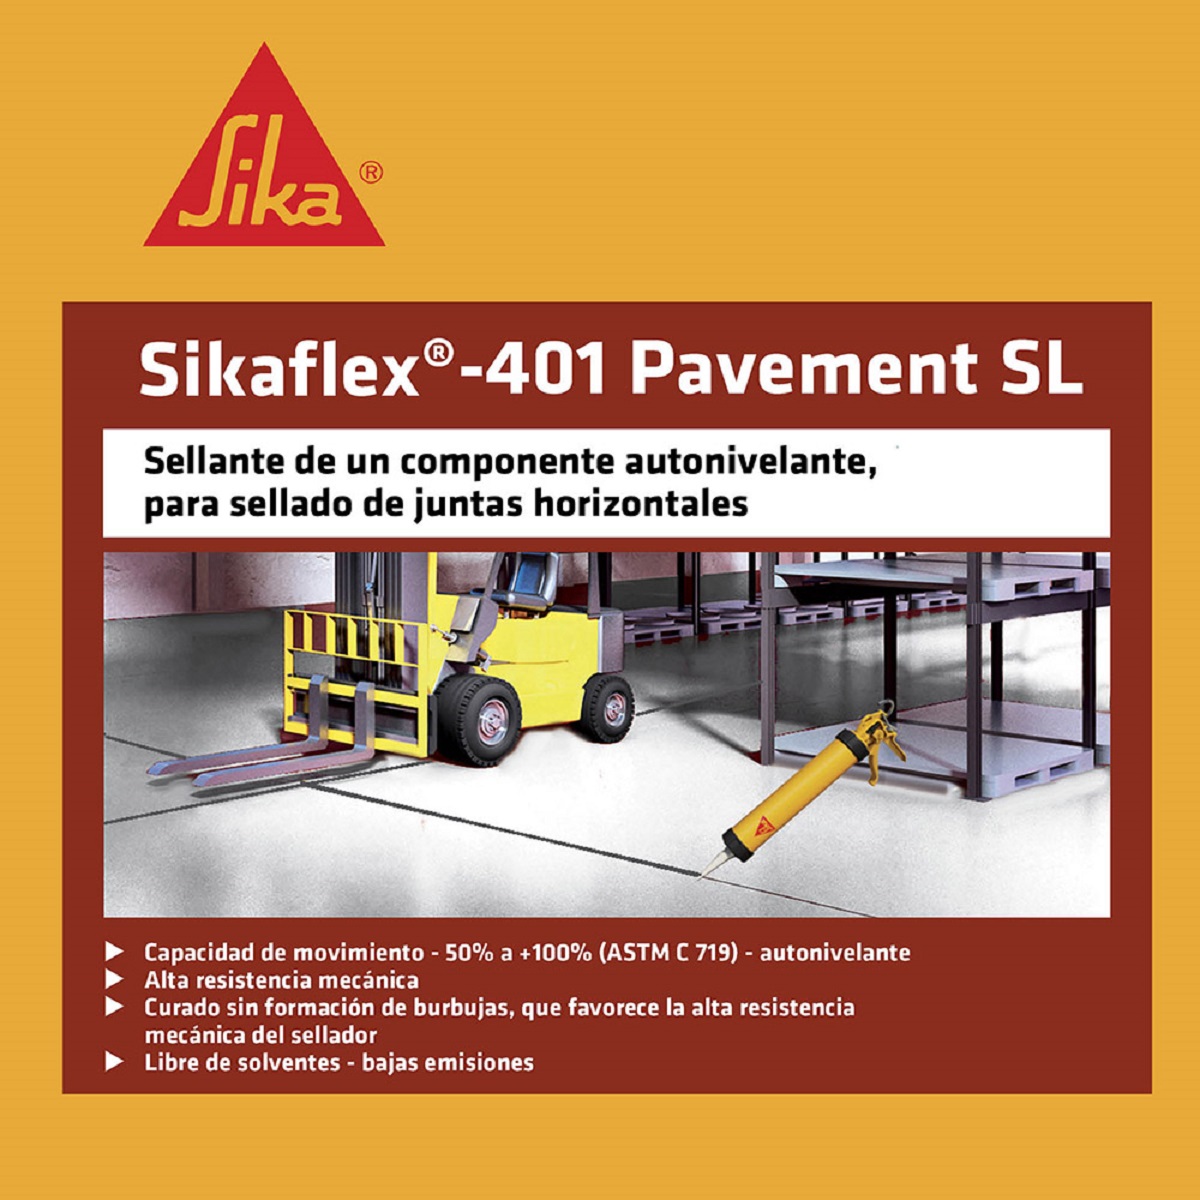 Sikaflex 401 pavement sl x300 ml Sika